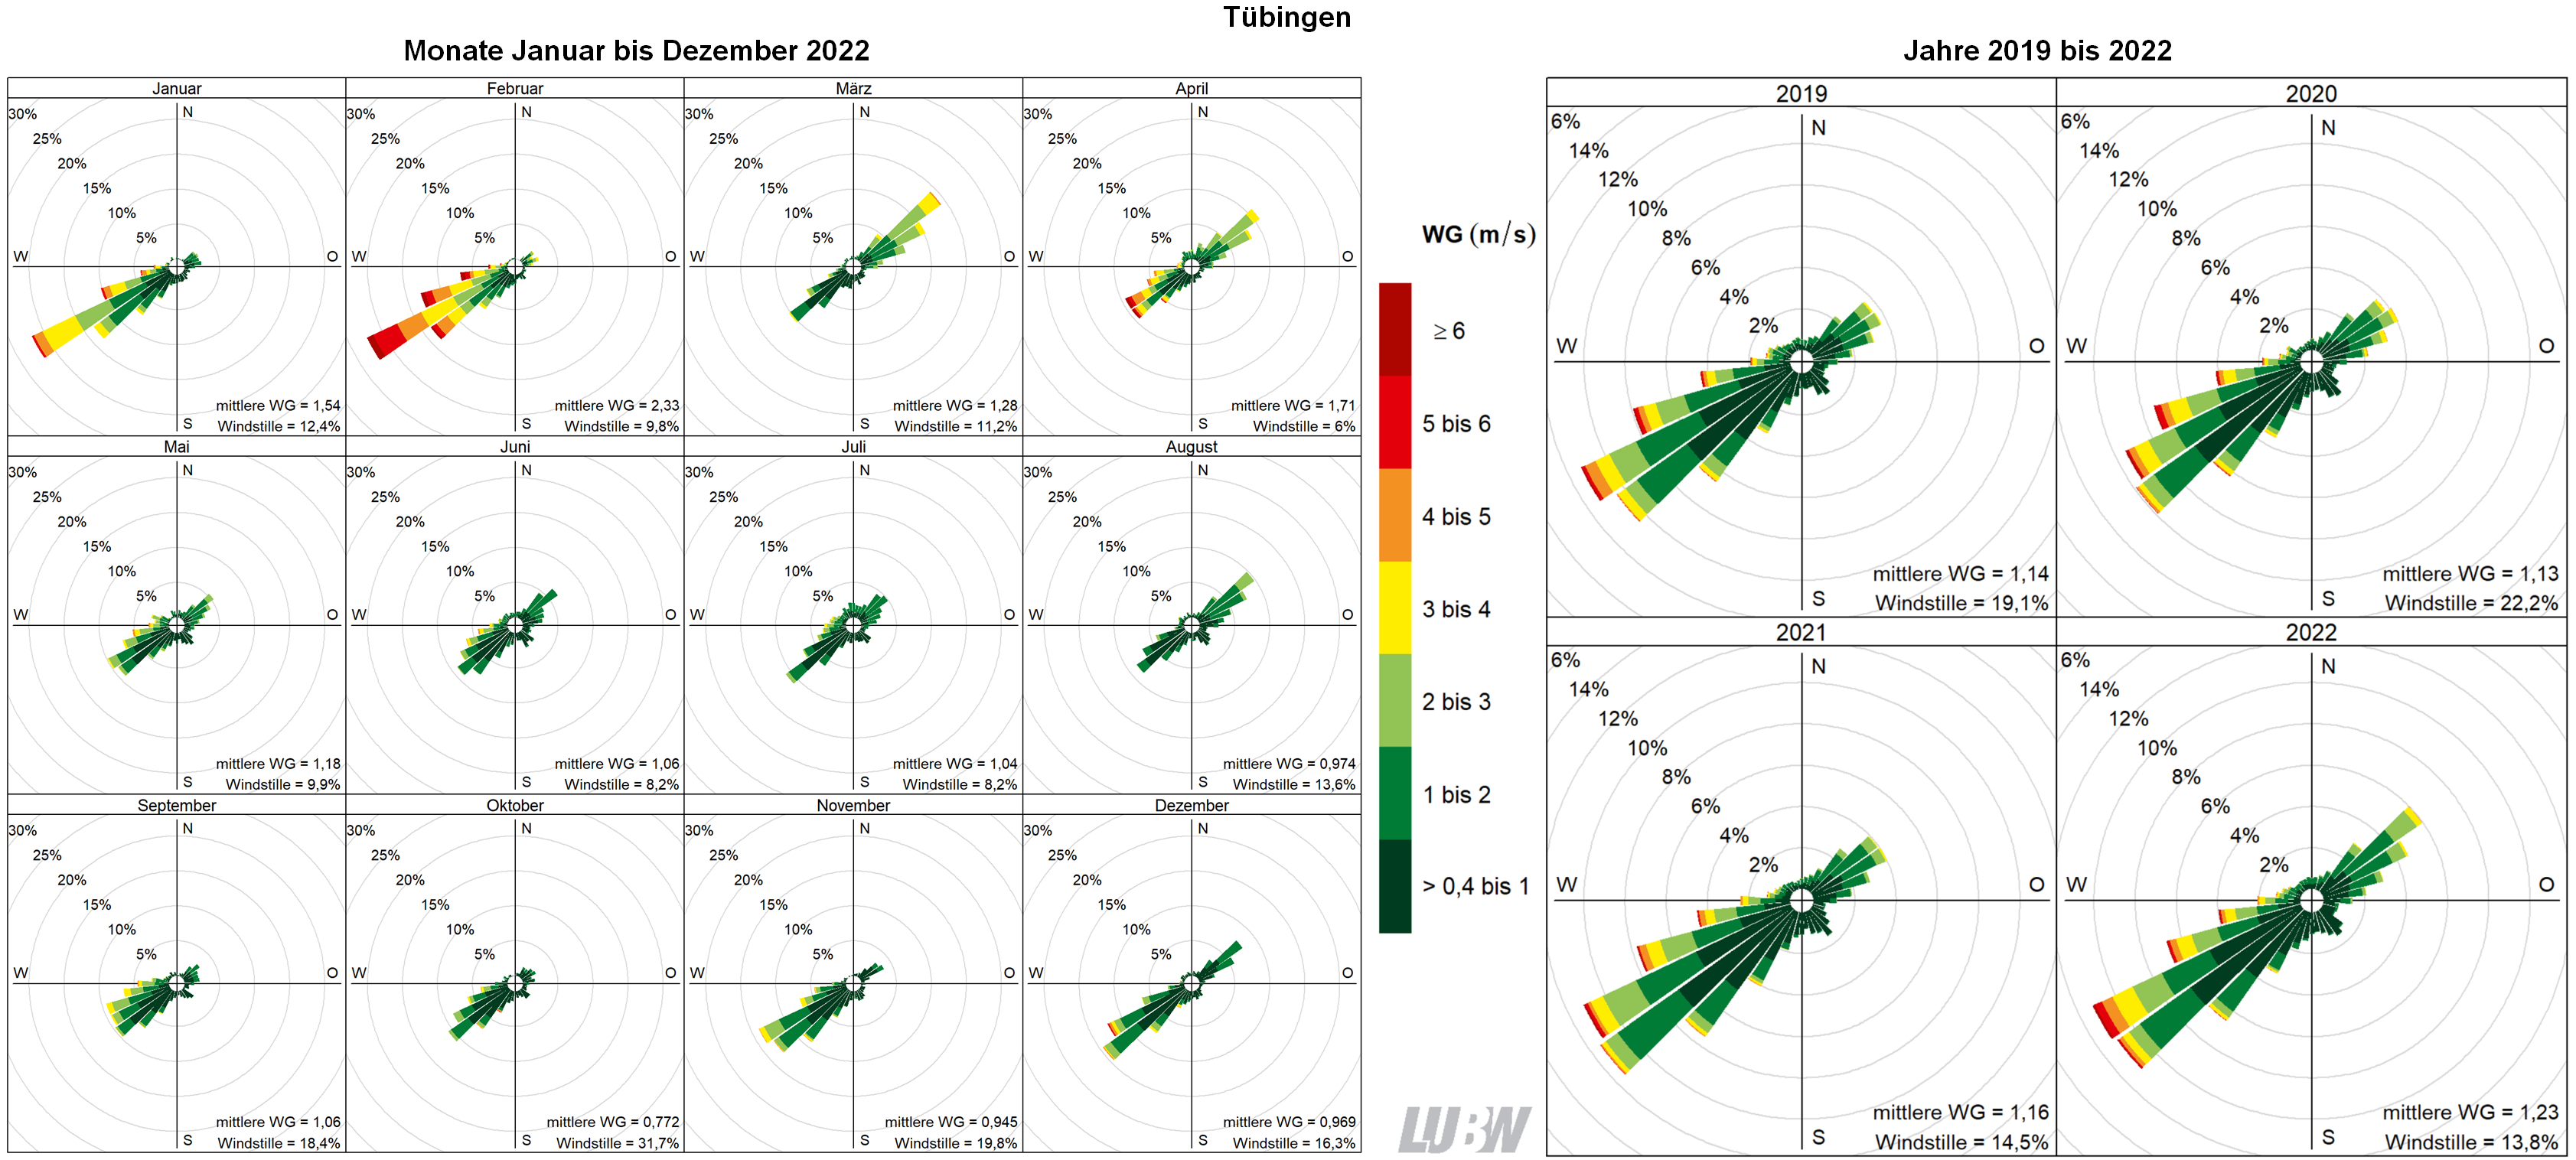  Mitttlere Windverteilung als Windrosen für die Monate Januar bis Dezember 2022 (linke Abbildung) sowie für die Jahre 2019 bis 2022 (rechte Abbildung) für den Standort Tübingen. Weitere Informationen im umliegenden Text. 